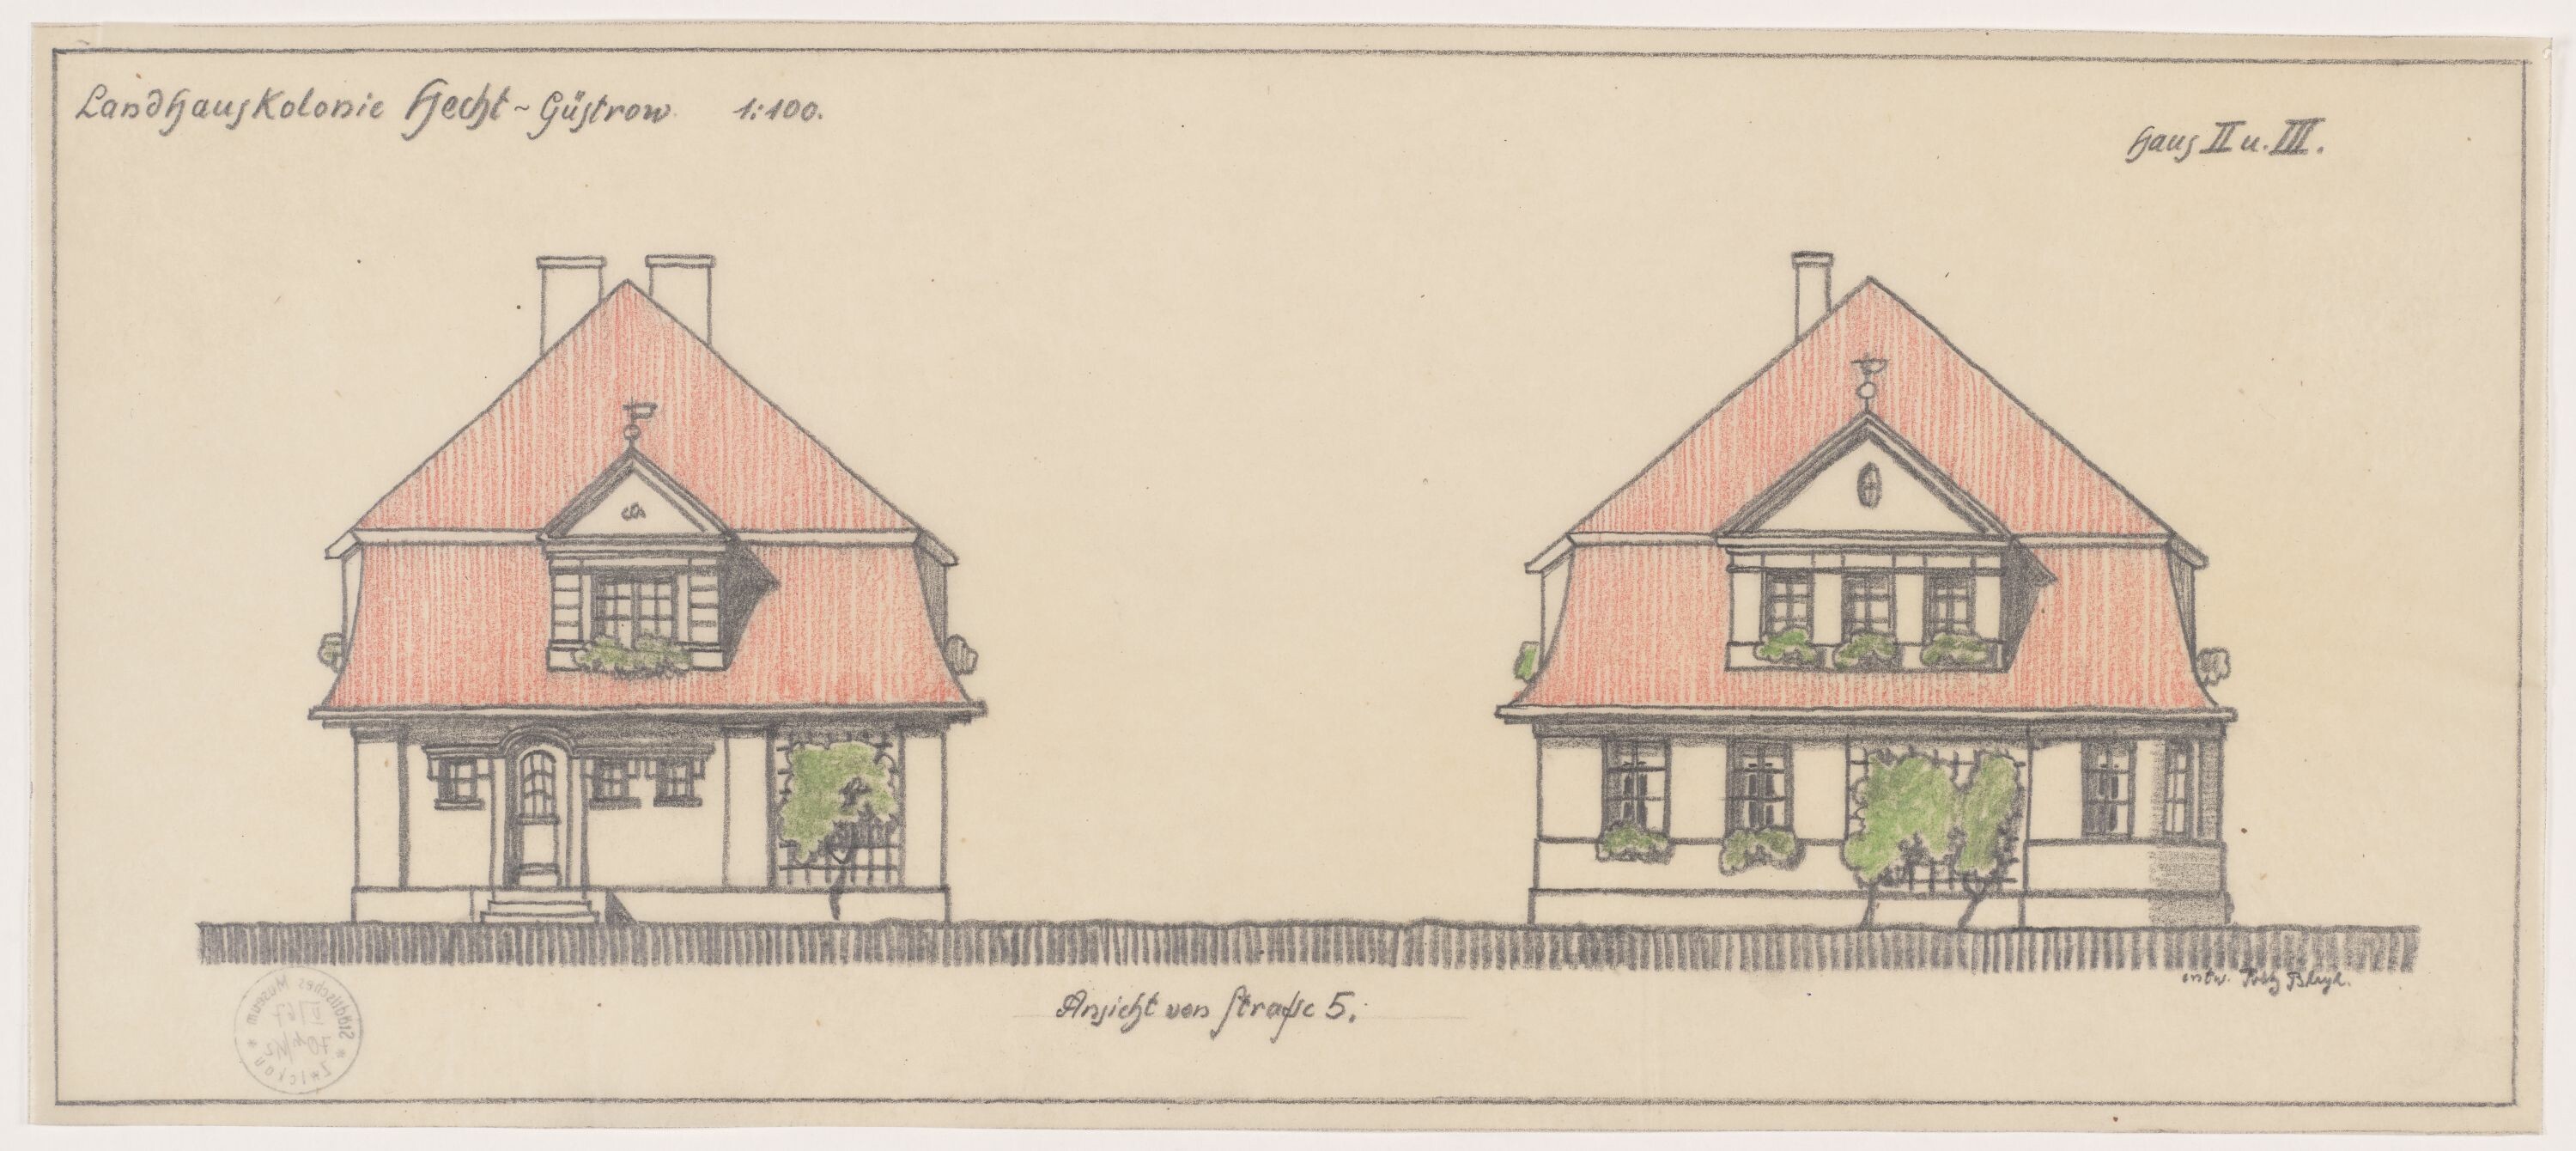 Landhauskolonie Hecht-Güstrow, Haus II und III, Entwurf (© Bleyl, Berlin/Solingen RR-F)